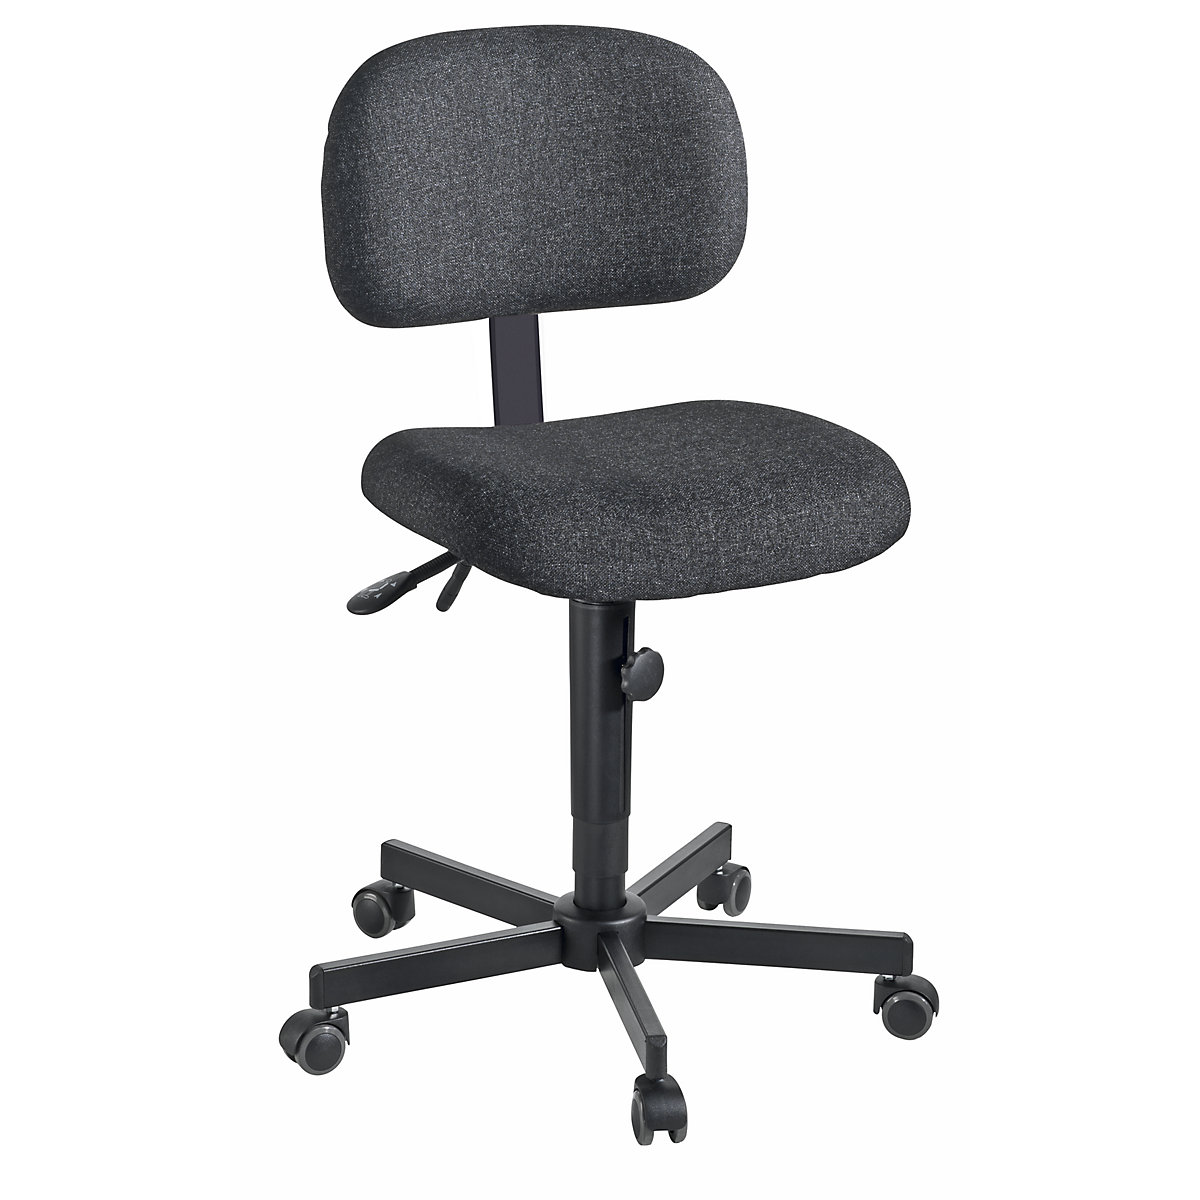 Pracovní otočná židle s přestavováním výšky pomocí klínové drážky – meychair, s kolečky, textil-4